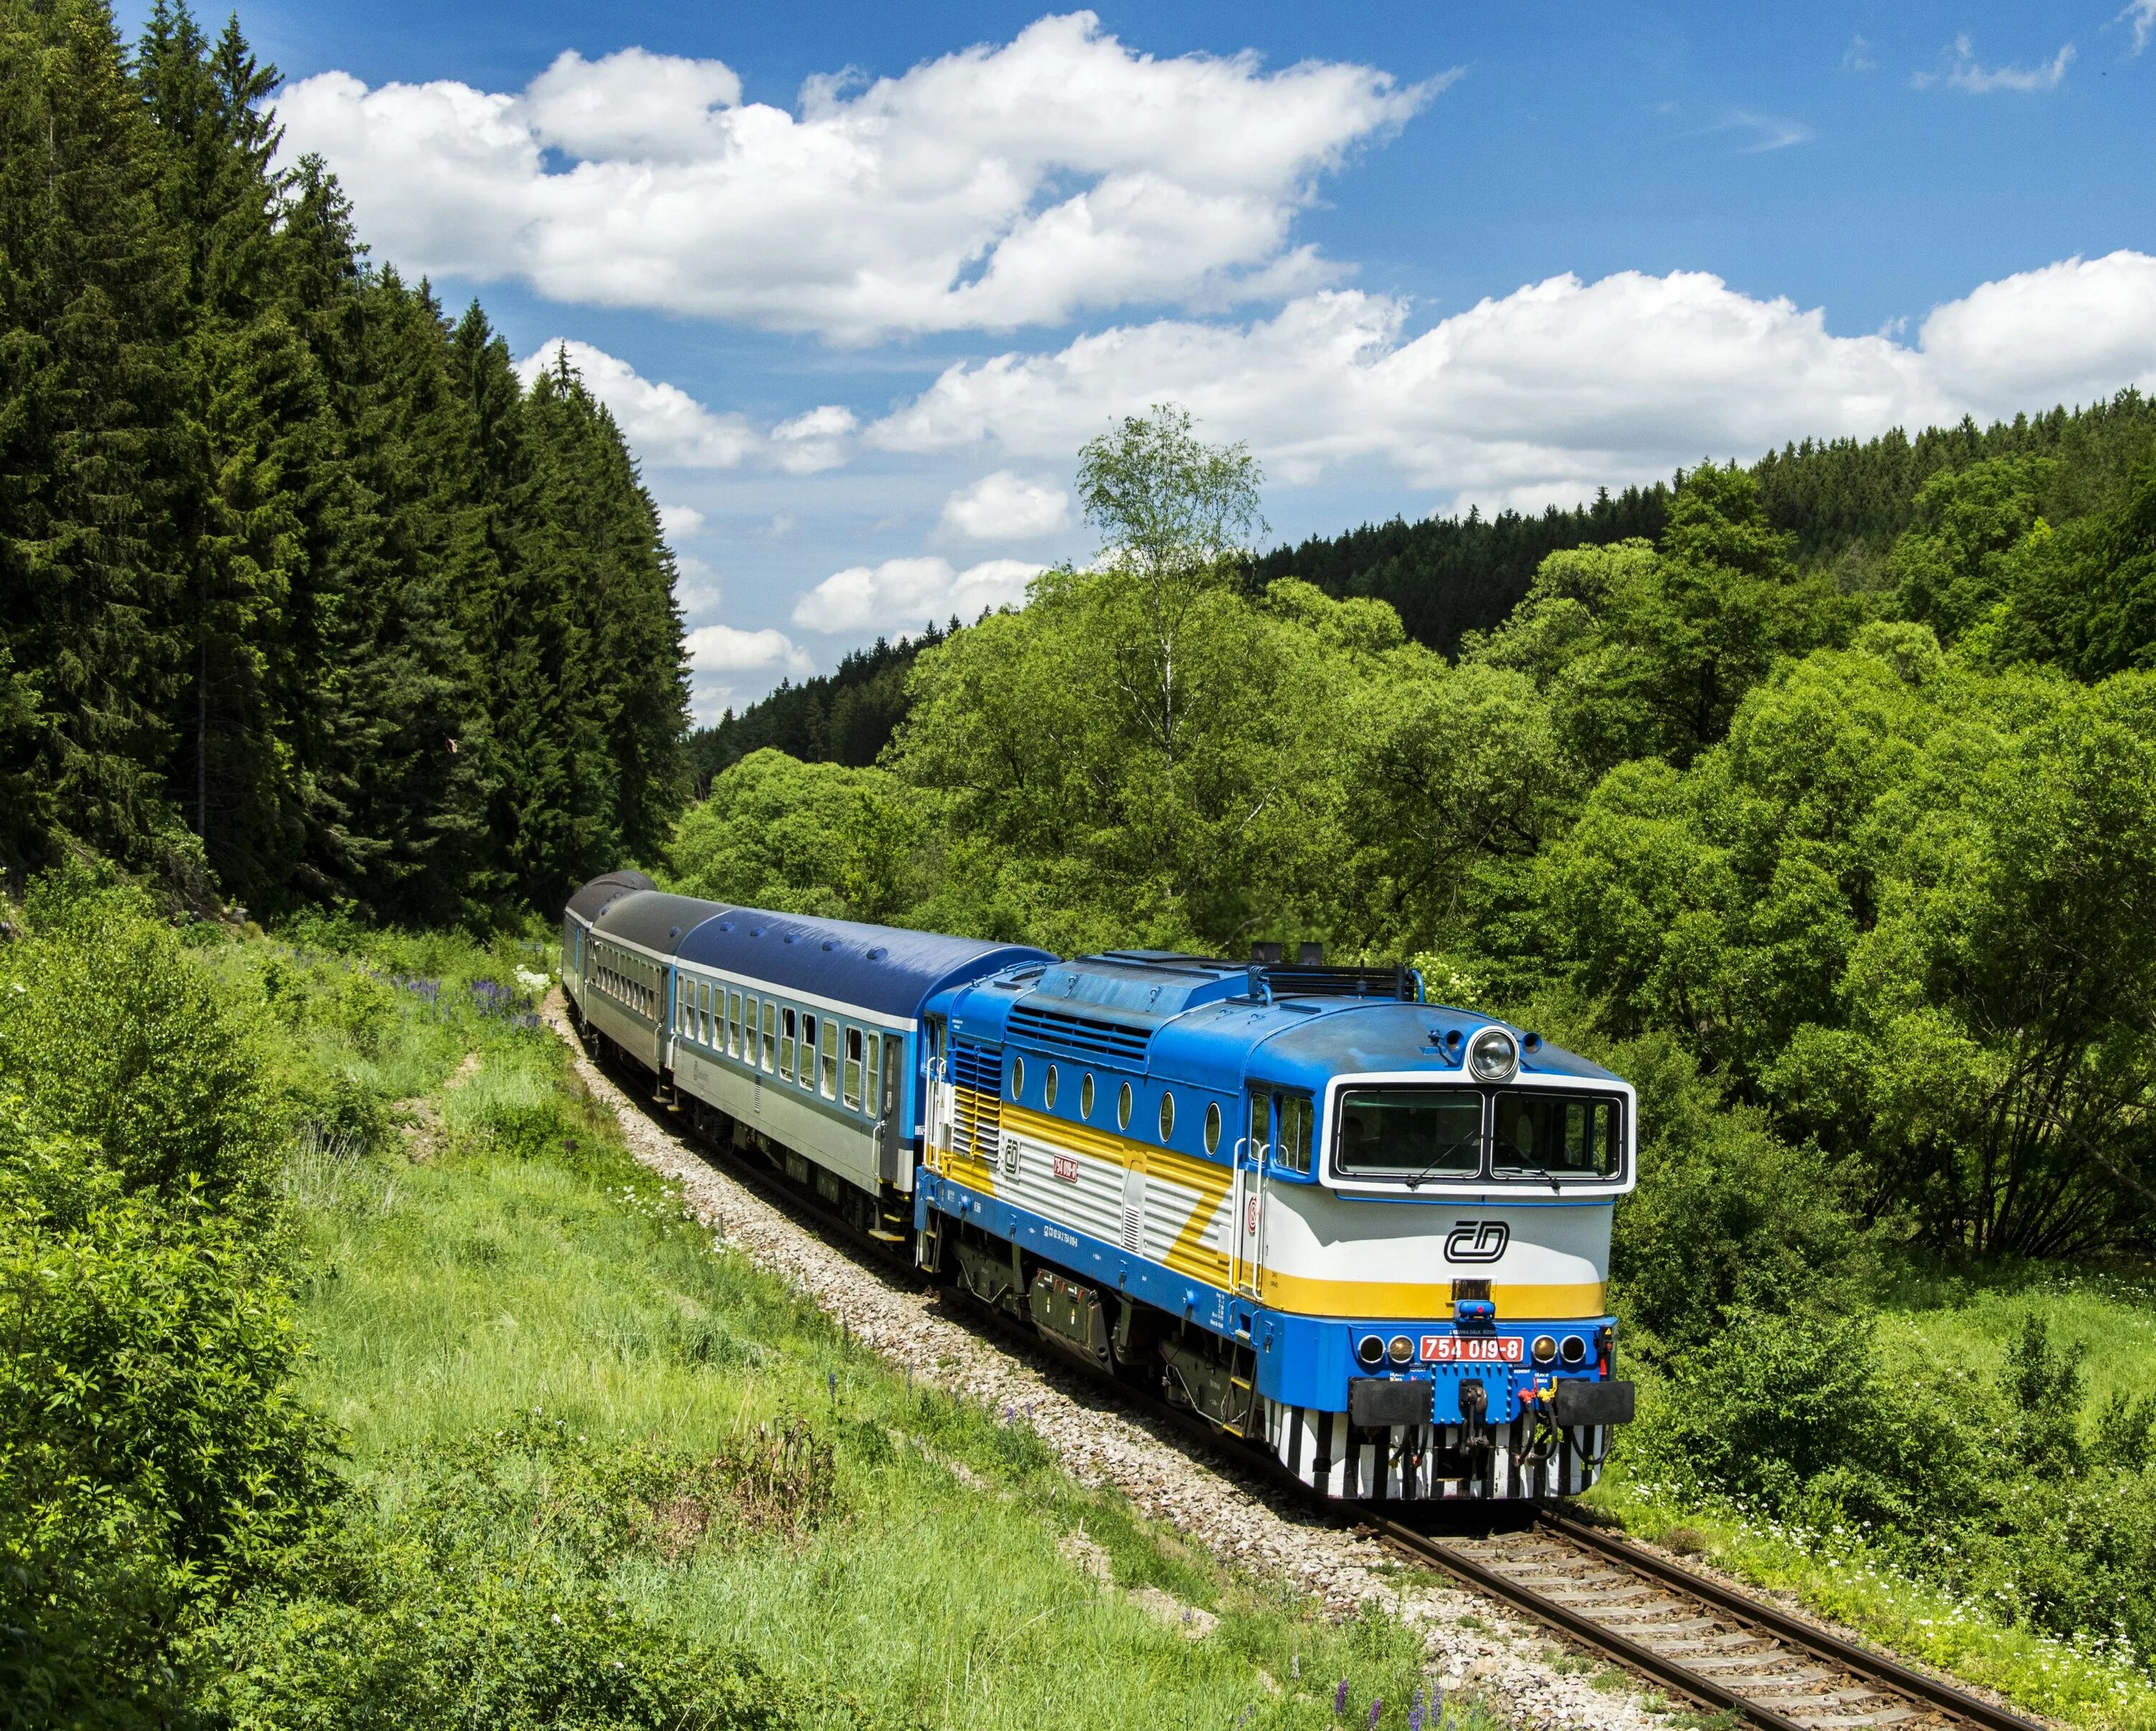 Союз железных дорог. Красивый поезд. Поезд в лесу. Железная дорога. Поезд на фоне природы.